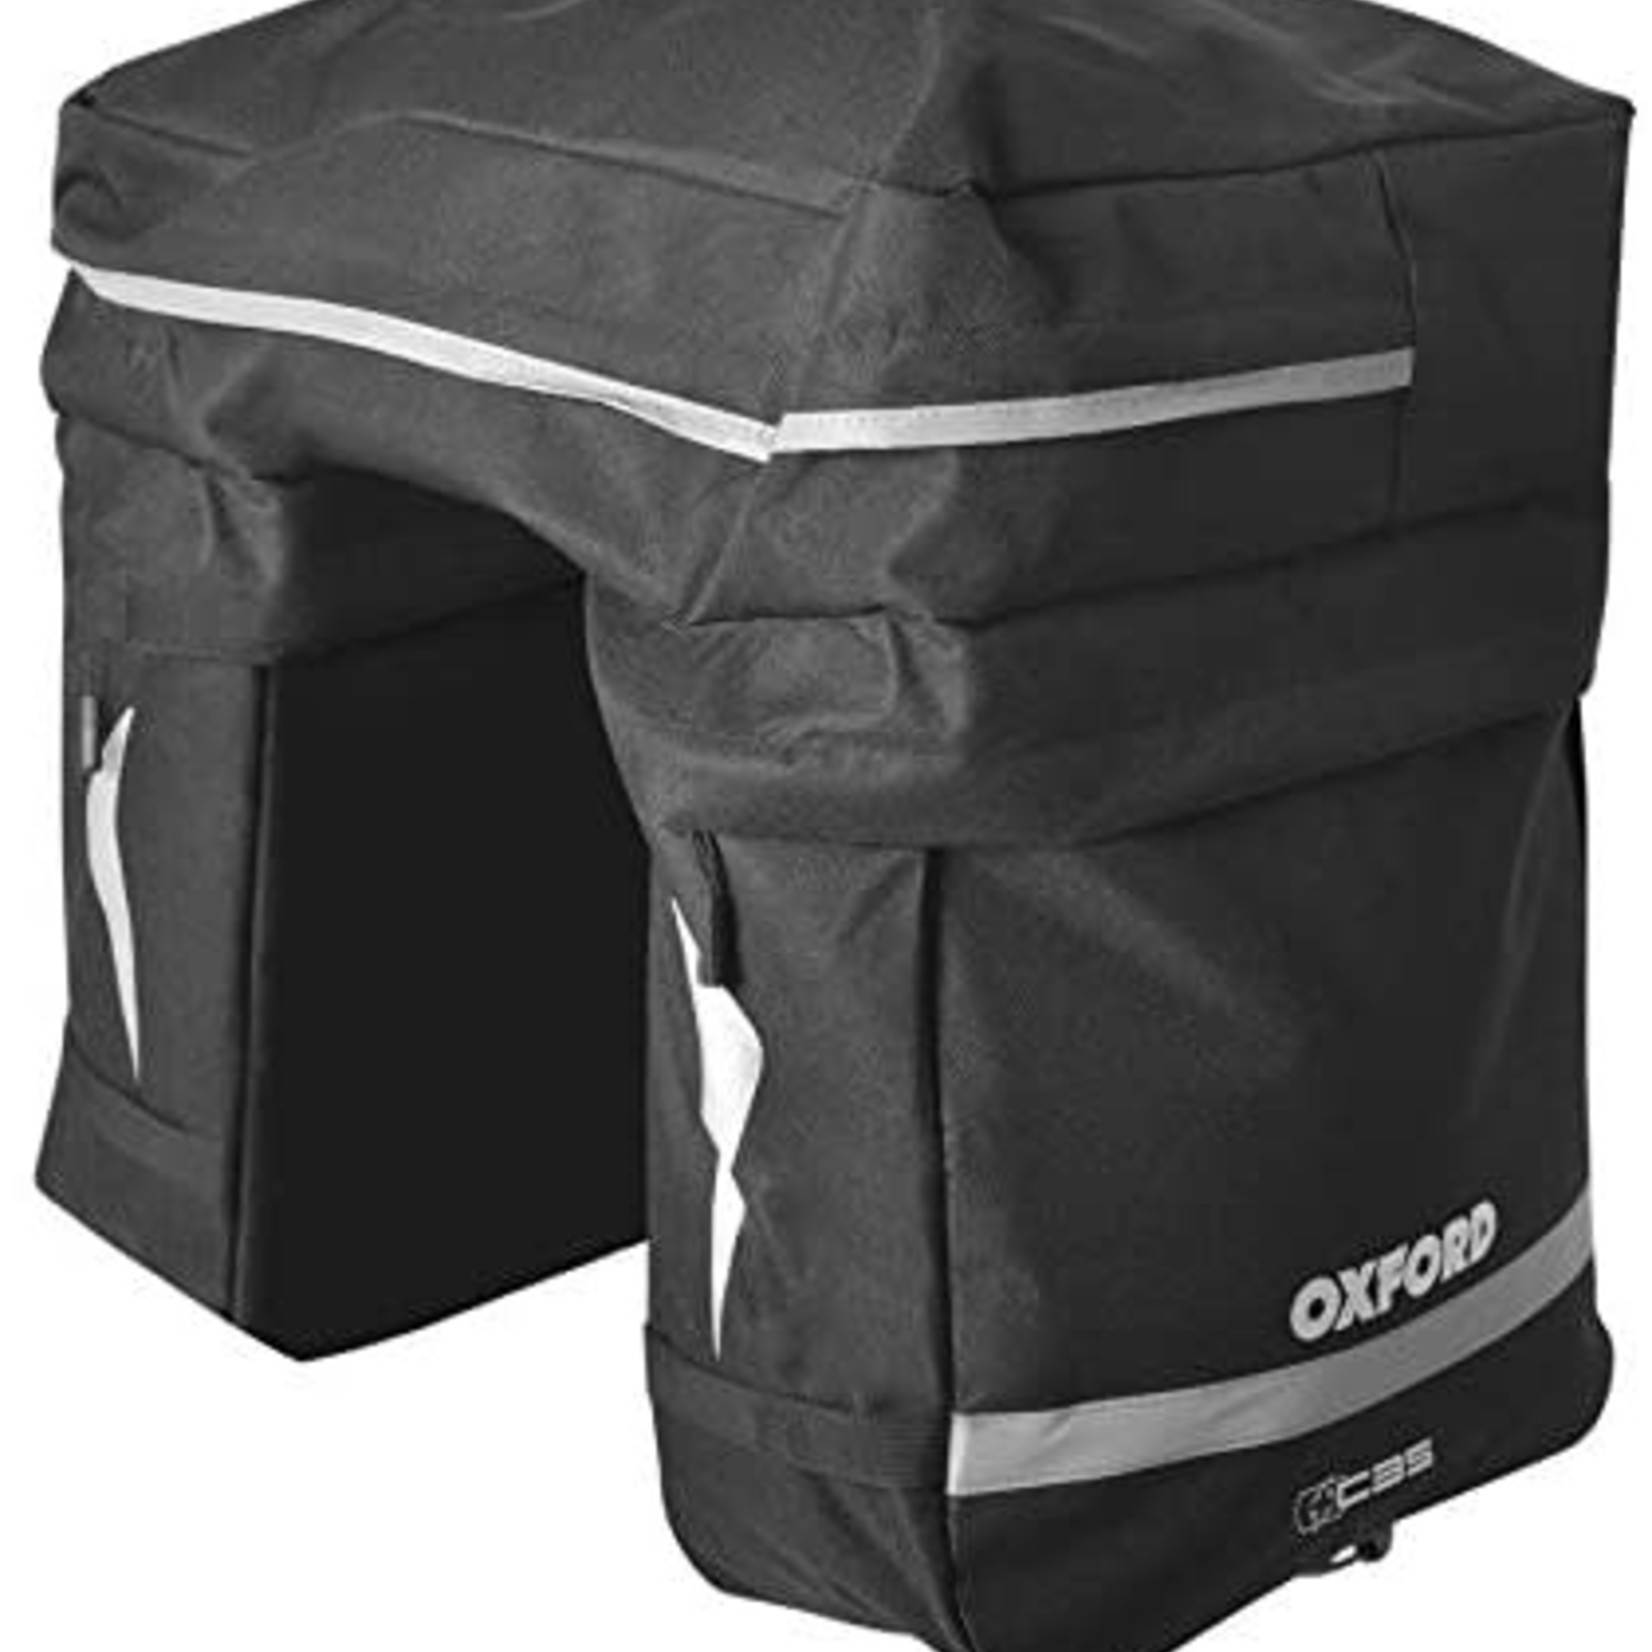 PANNIER BAGS - Oxford C35 Triple Pannier Bag 35L, durable polyester, weatherproof design, reflective detail, BLACK - Oxford Product